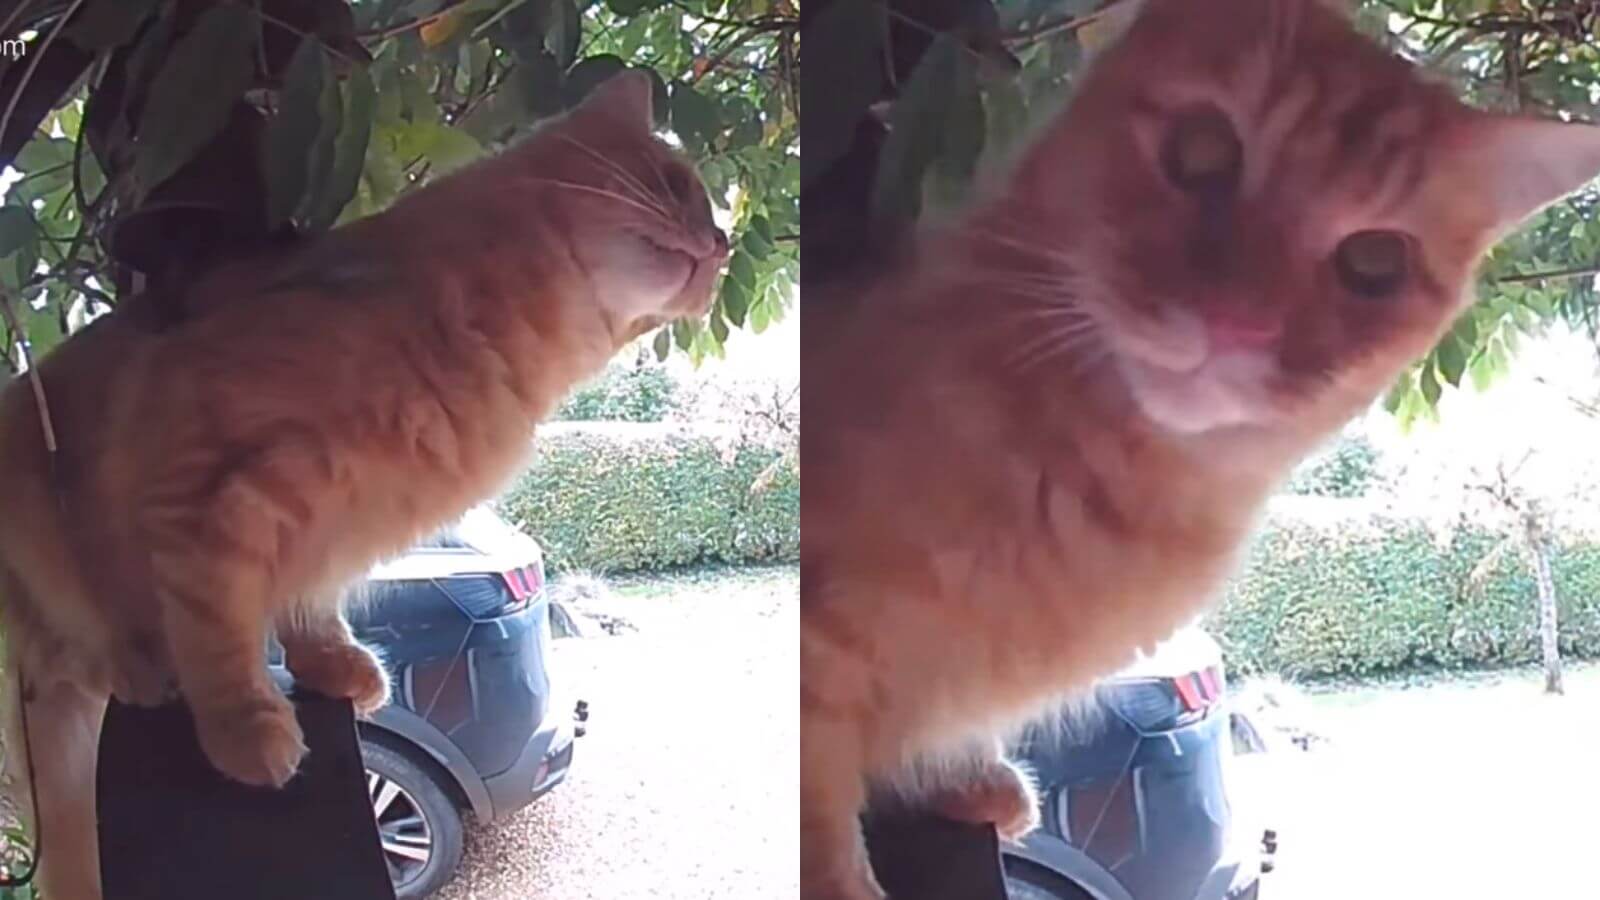 VÍDEO: gato esperto aprende a usar a campainha para entrar em casa